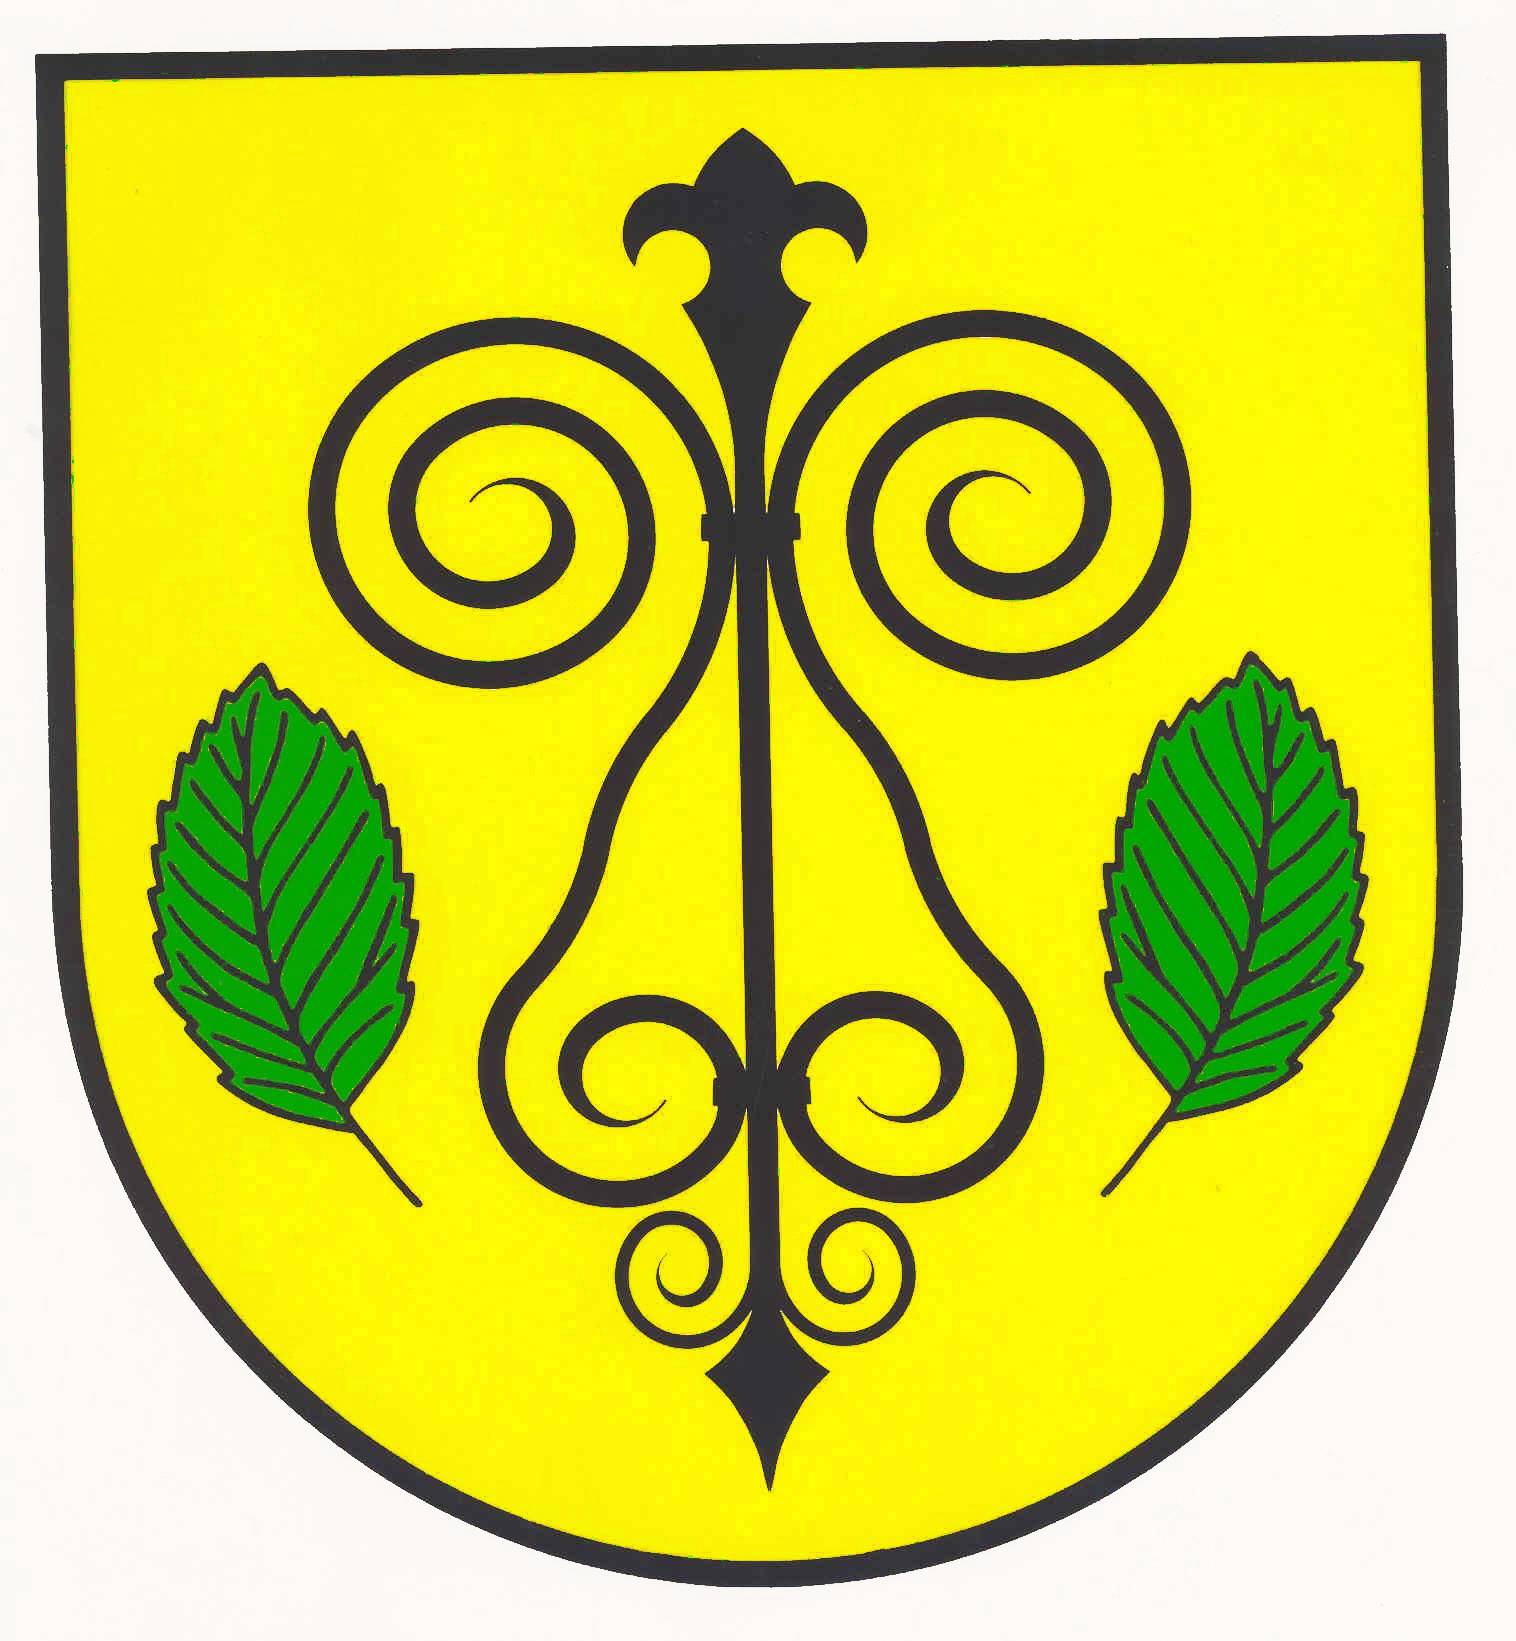 Wappen Gemeinde Langstedt, Kreis Schleswig-Flensburg